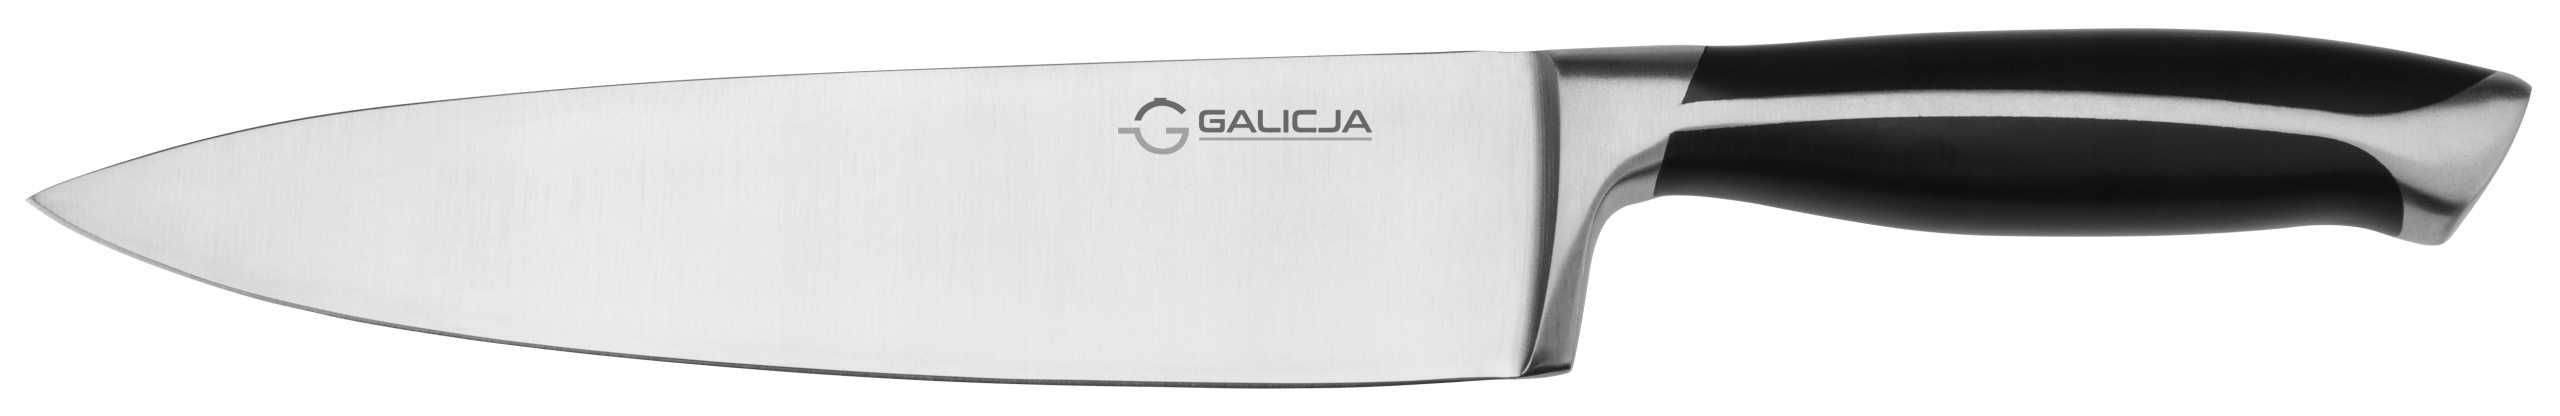 Nóż uniwersalny Galicja 20 cm 04019